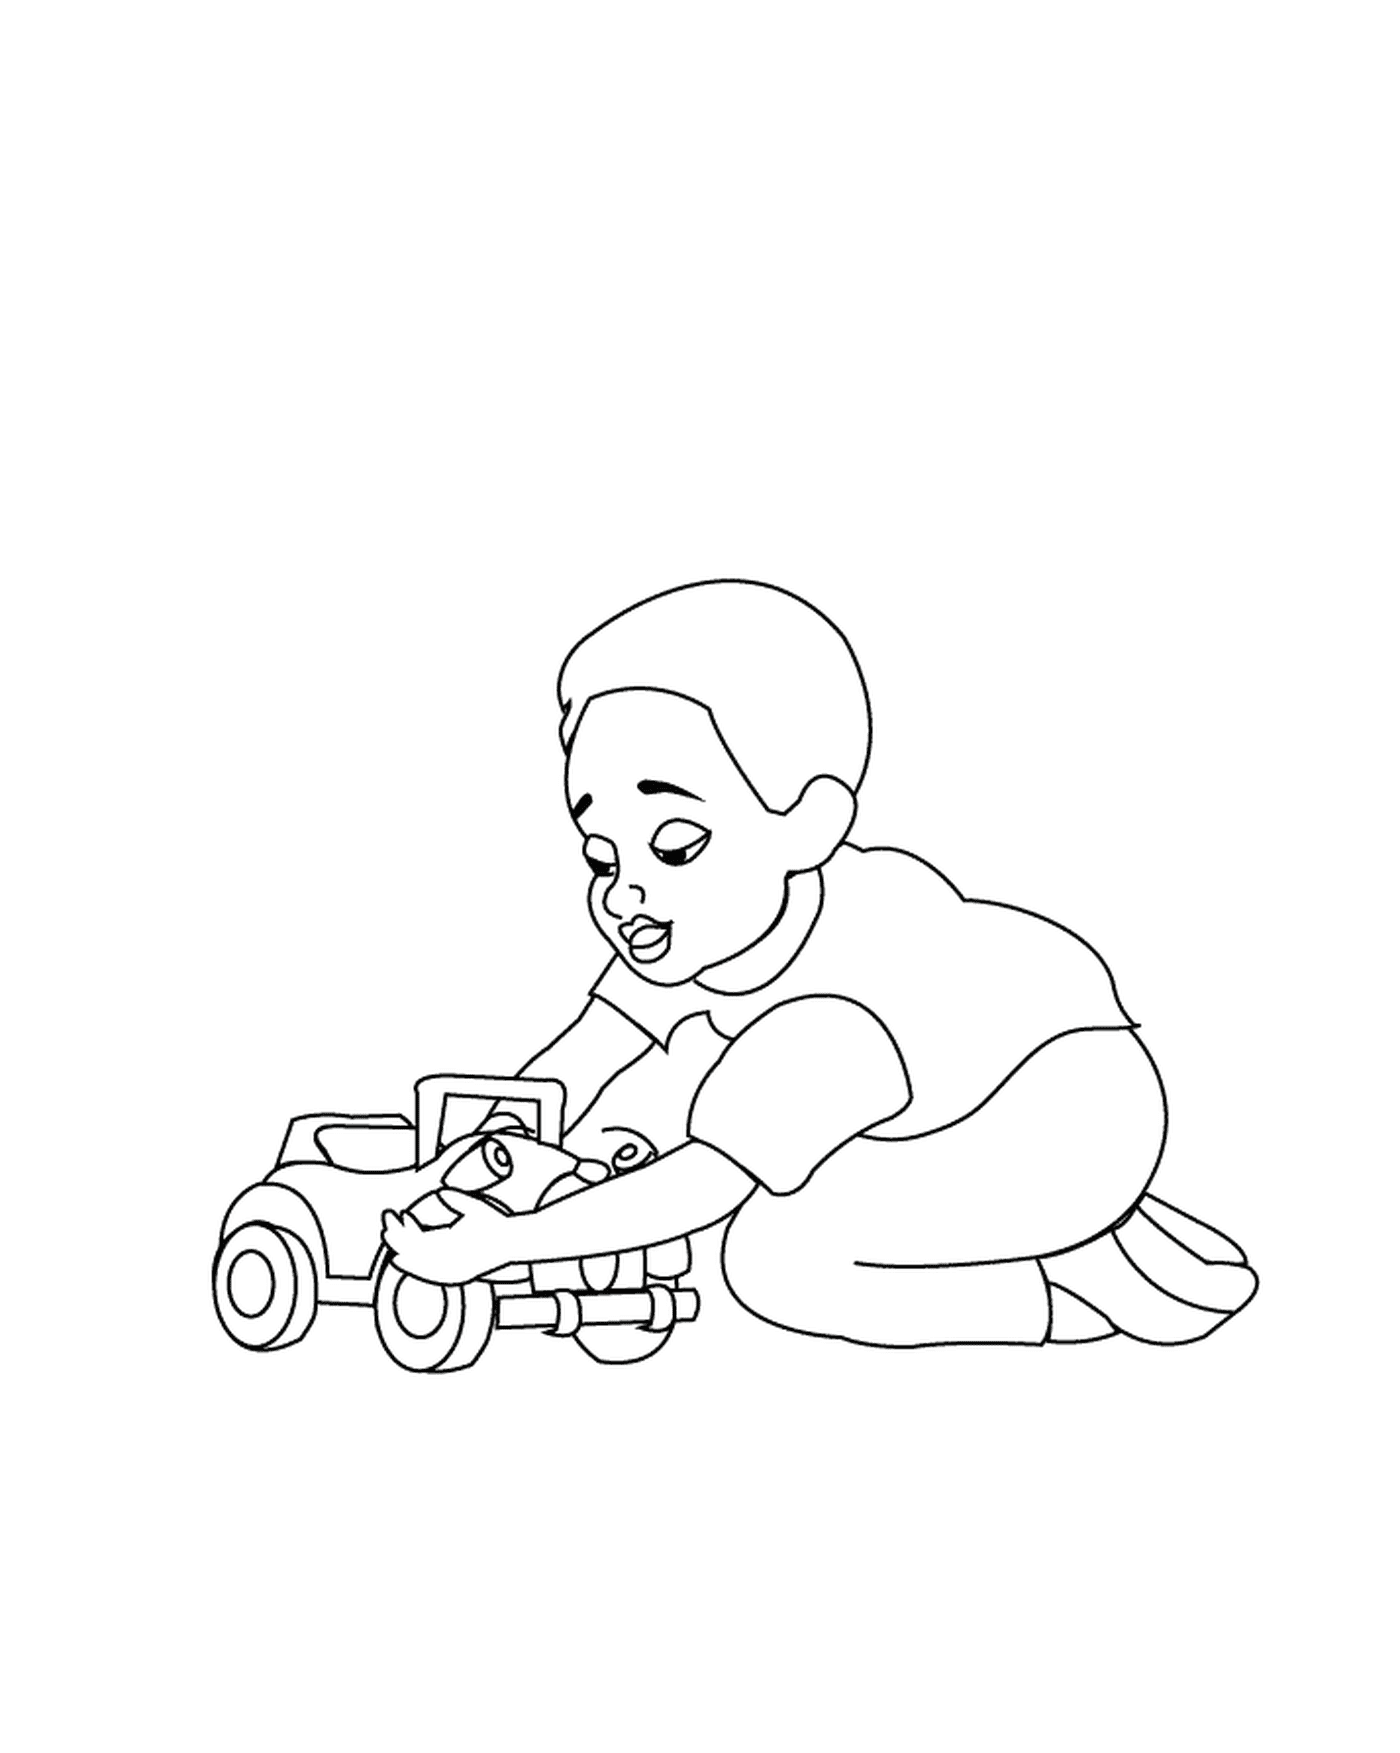  Un bambino gioca con una macchina giocattolo 